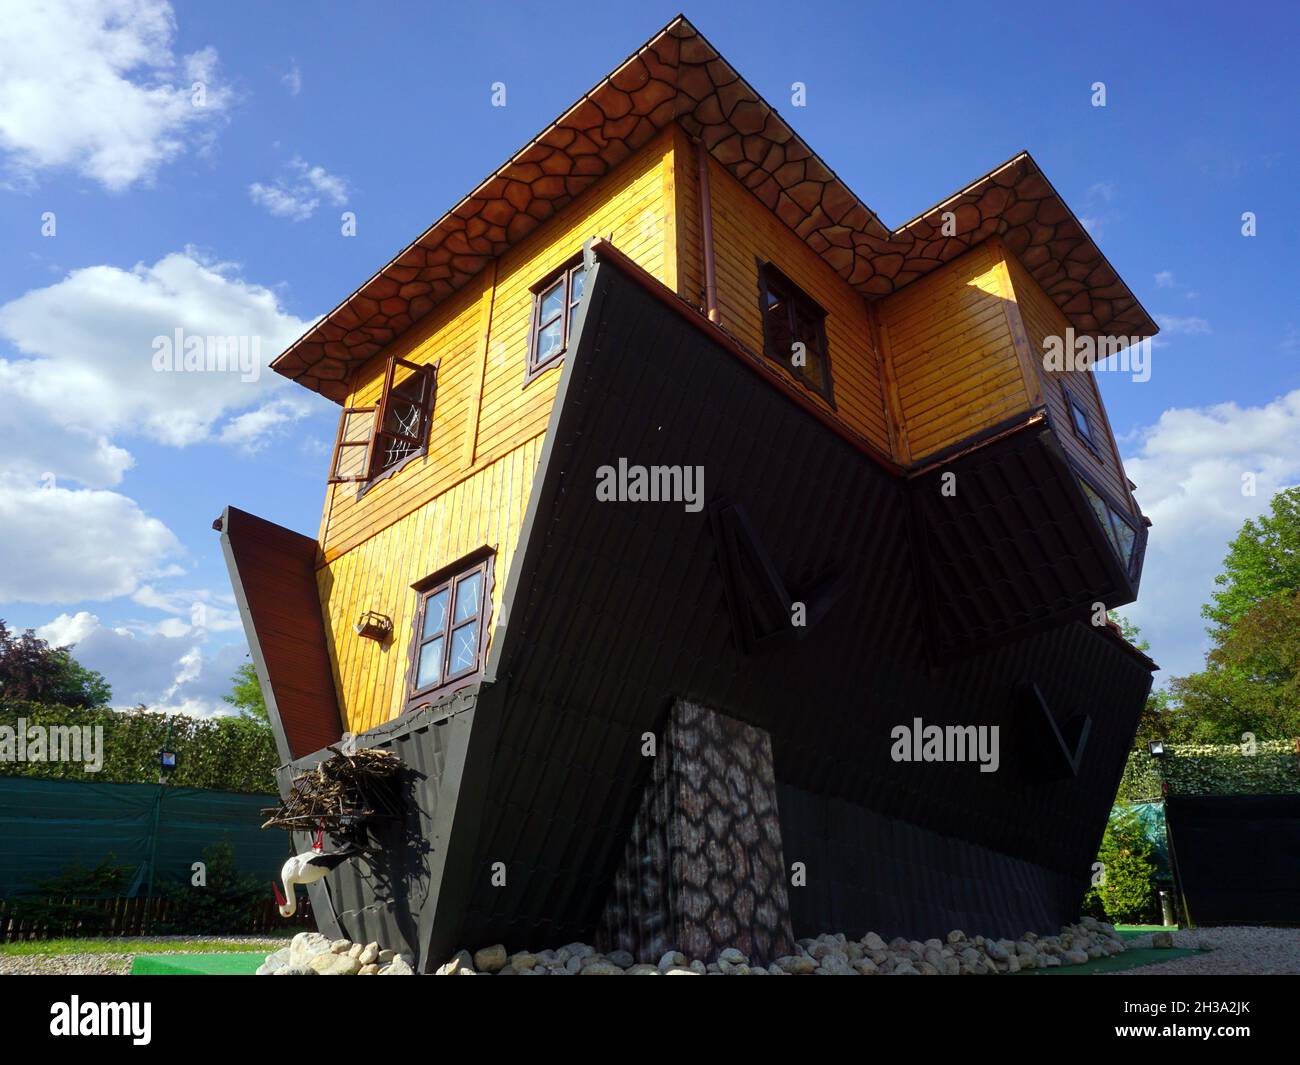 Casa capovolta, attrazione turistica, Zakopane, Polonia, maggio 2018 Foto Stock